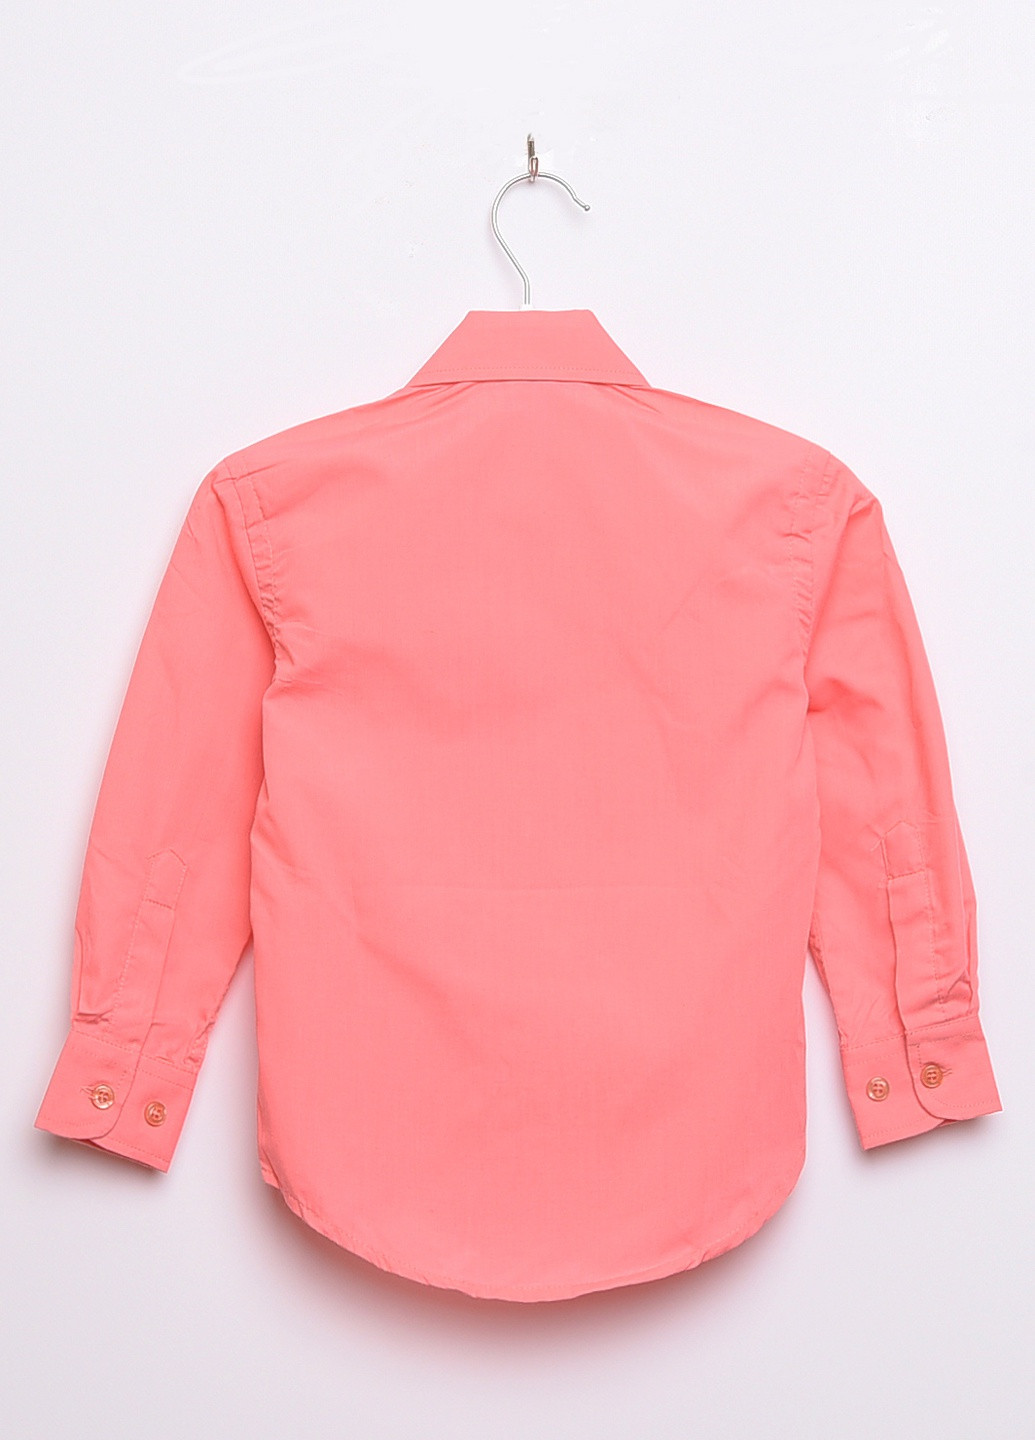 Розовая классическая рубашка с надписями Let's Shop